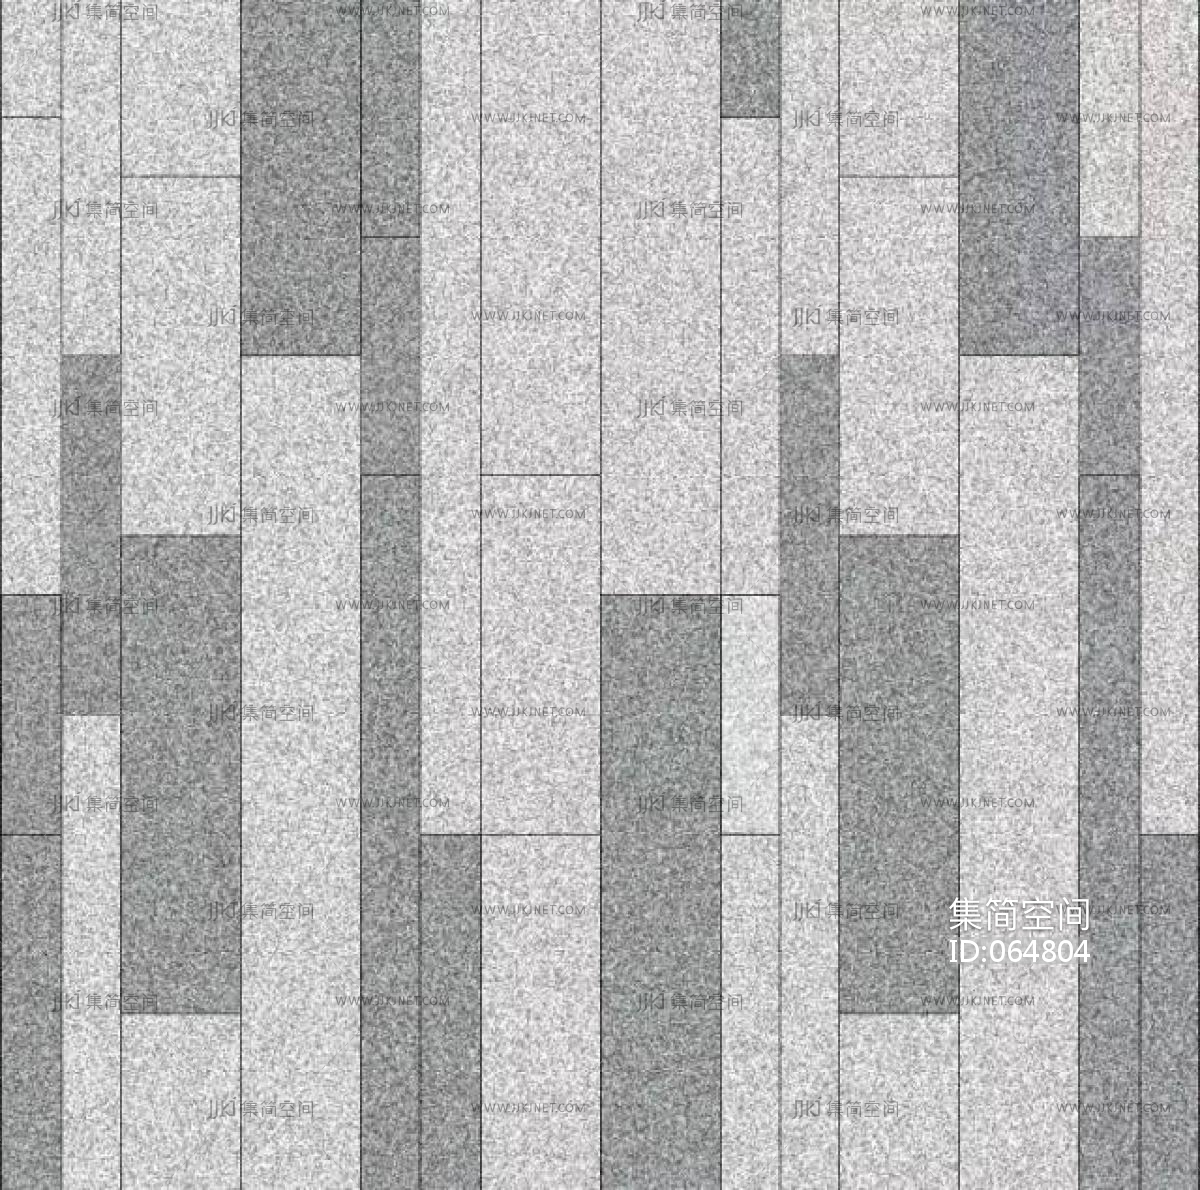 室外铺地铺装广场砖 (13)材质贴图下载-【集简空间】「每日更新」